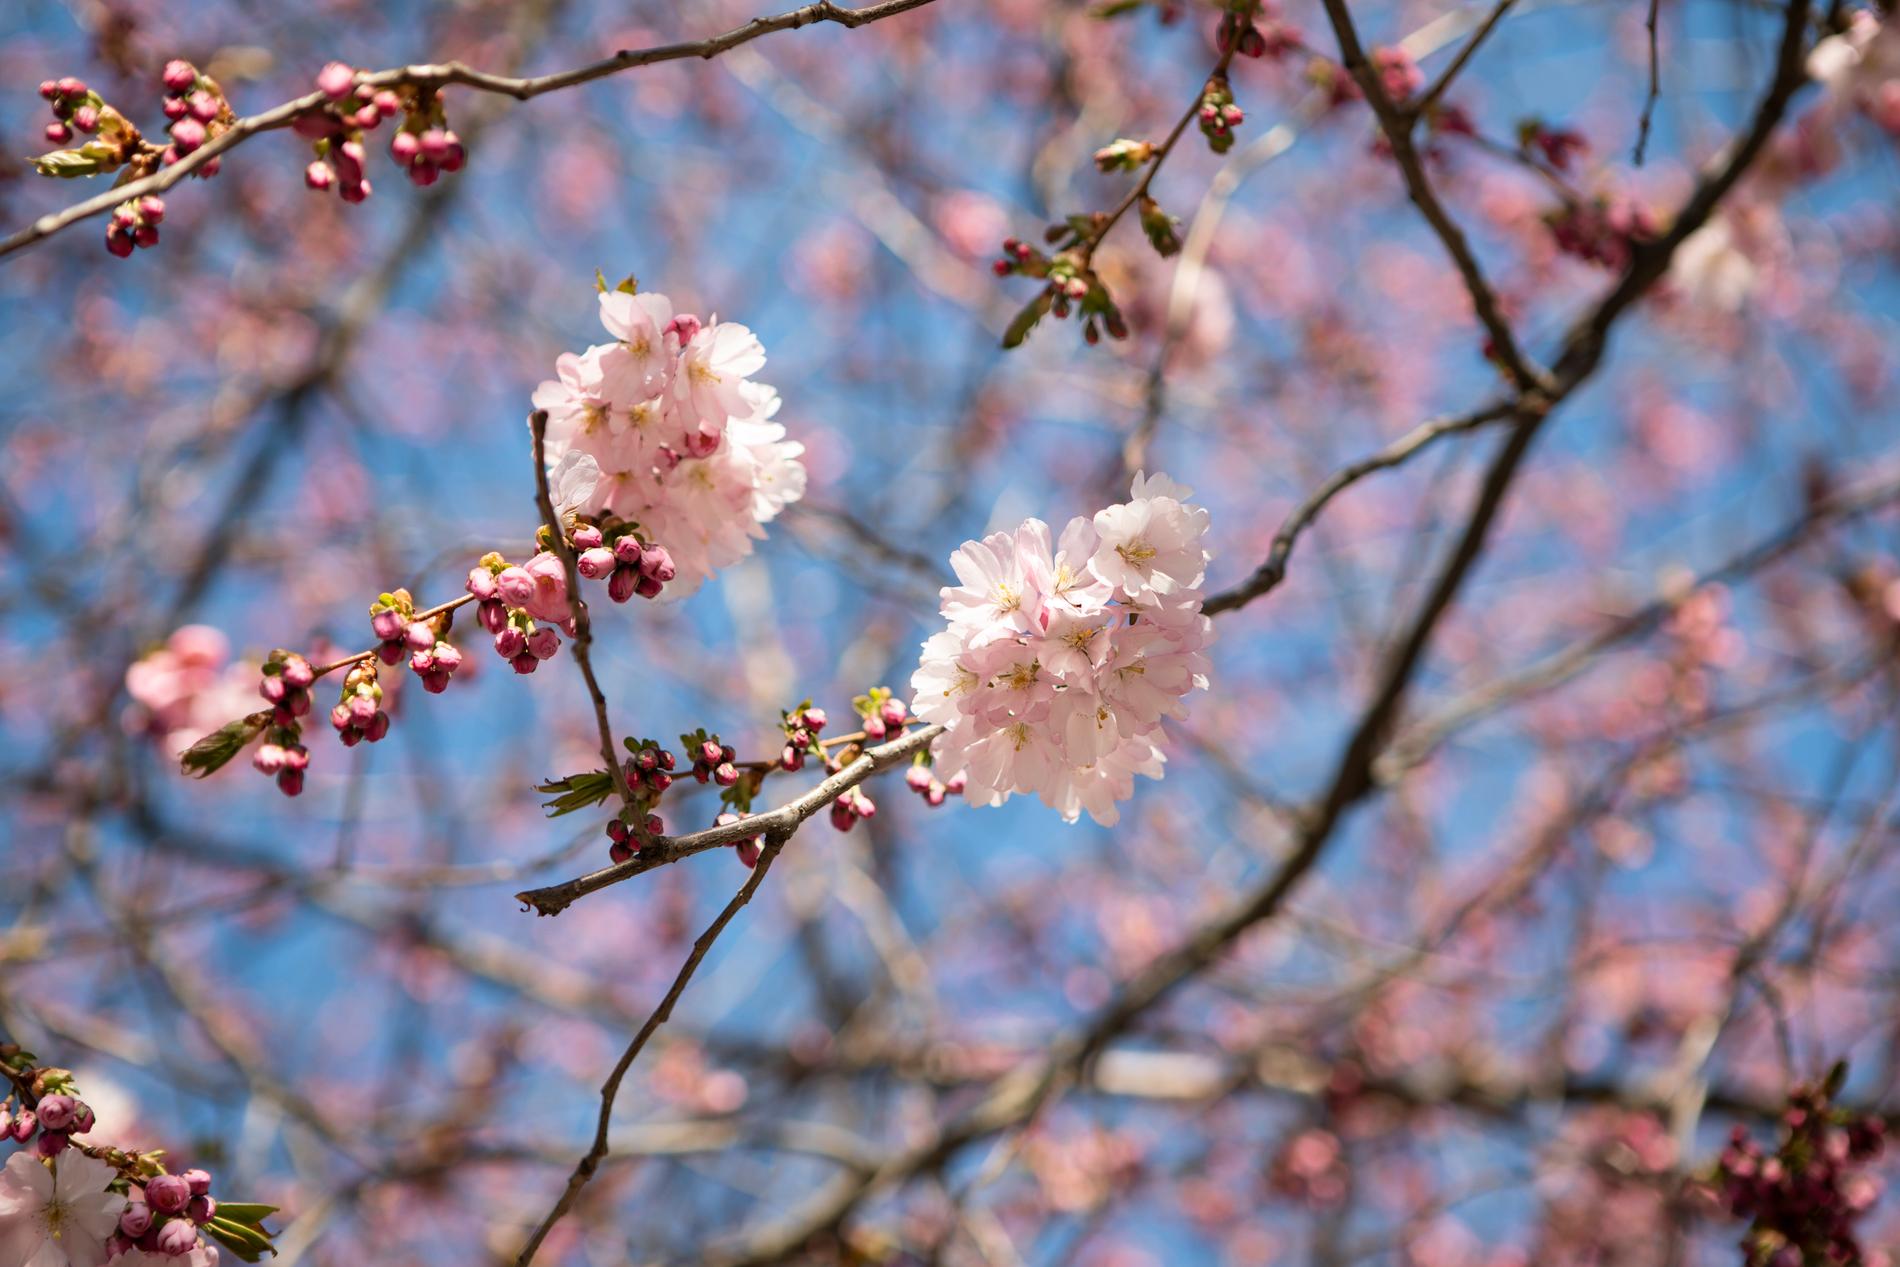 Körsbärsträden i blom våren 2019. 